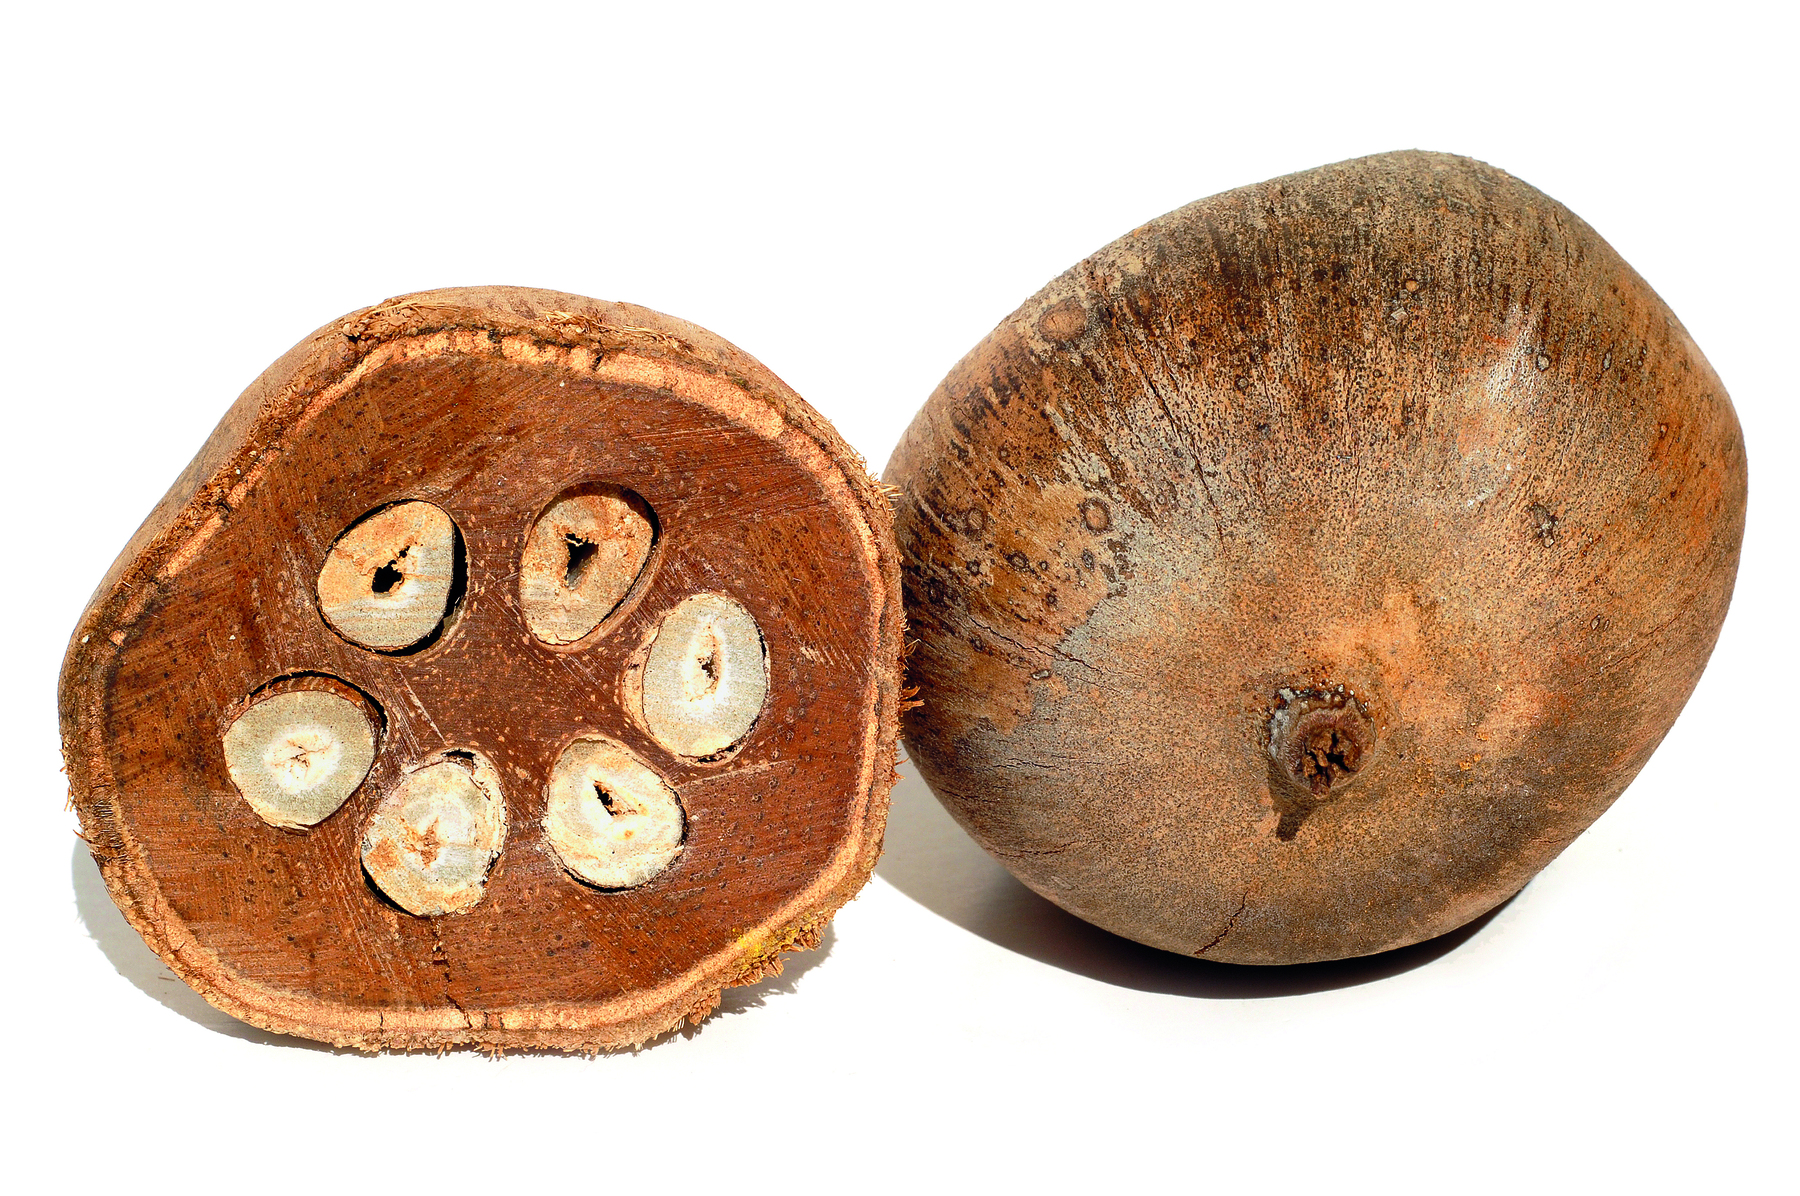 Fotografia. Vista de um coco de babaçu cortado ao meio. A parte interna é marrom, com sementes brancas formando um círculo. A parte externa tem a casca marrom.